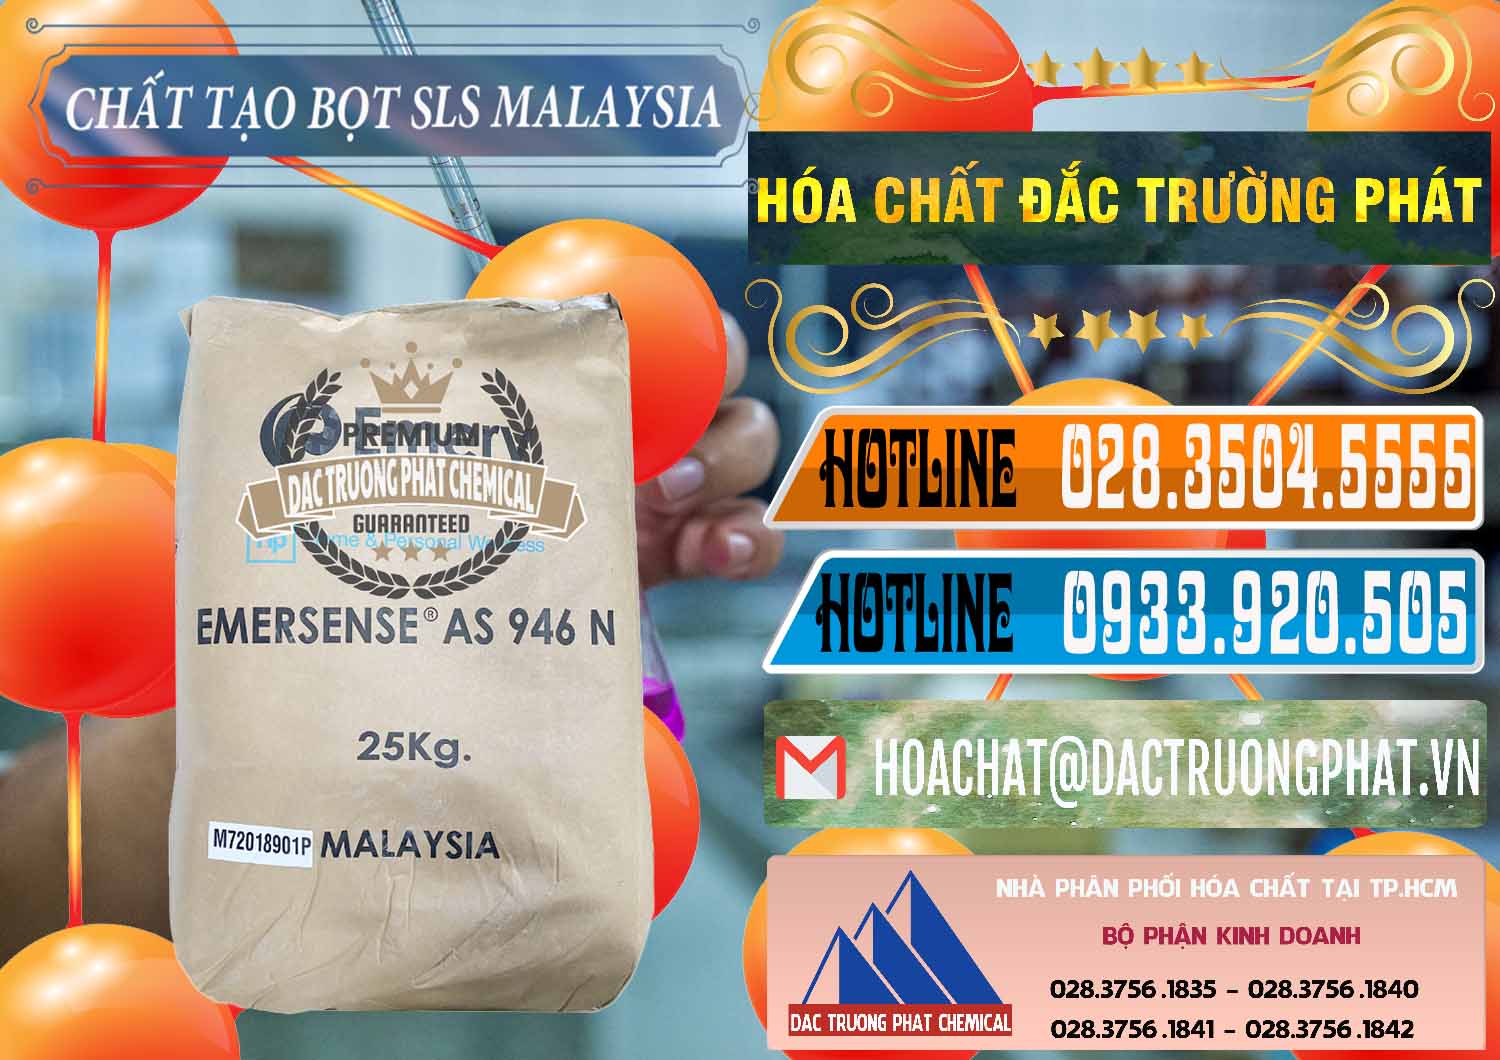 Cty cung cấp ( bán ) Chất Tạo Bọt SLS Emery - Emersense AS 946N Mã Lai Malaysia - 0423 - Nơi phân phối ( kinh doanh ) hóa chất tại TP.HCM - stmp.net